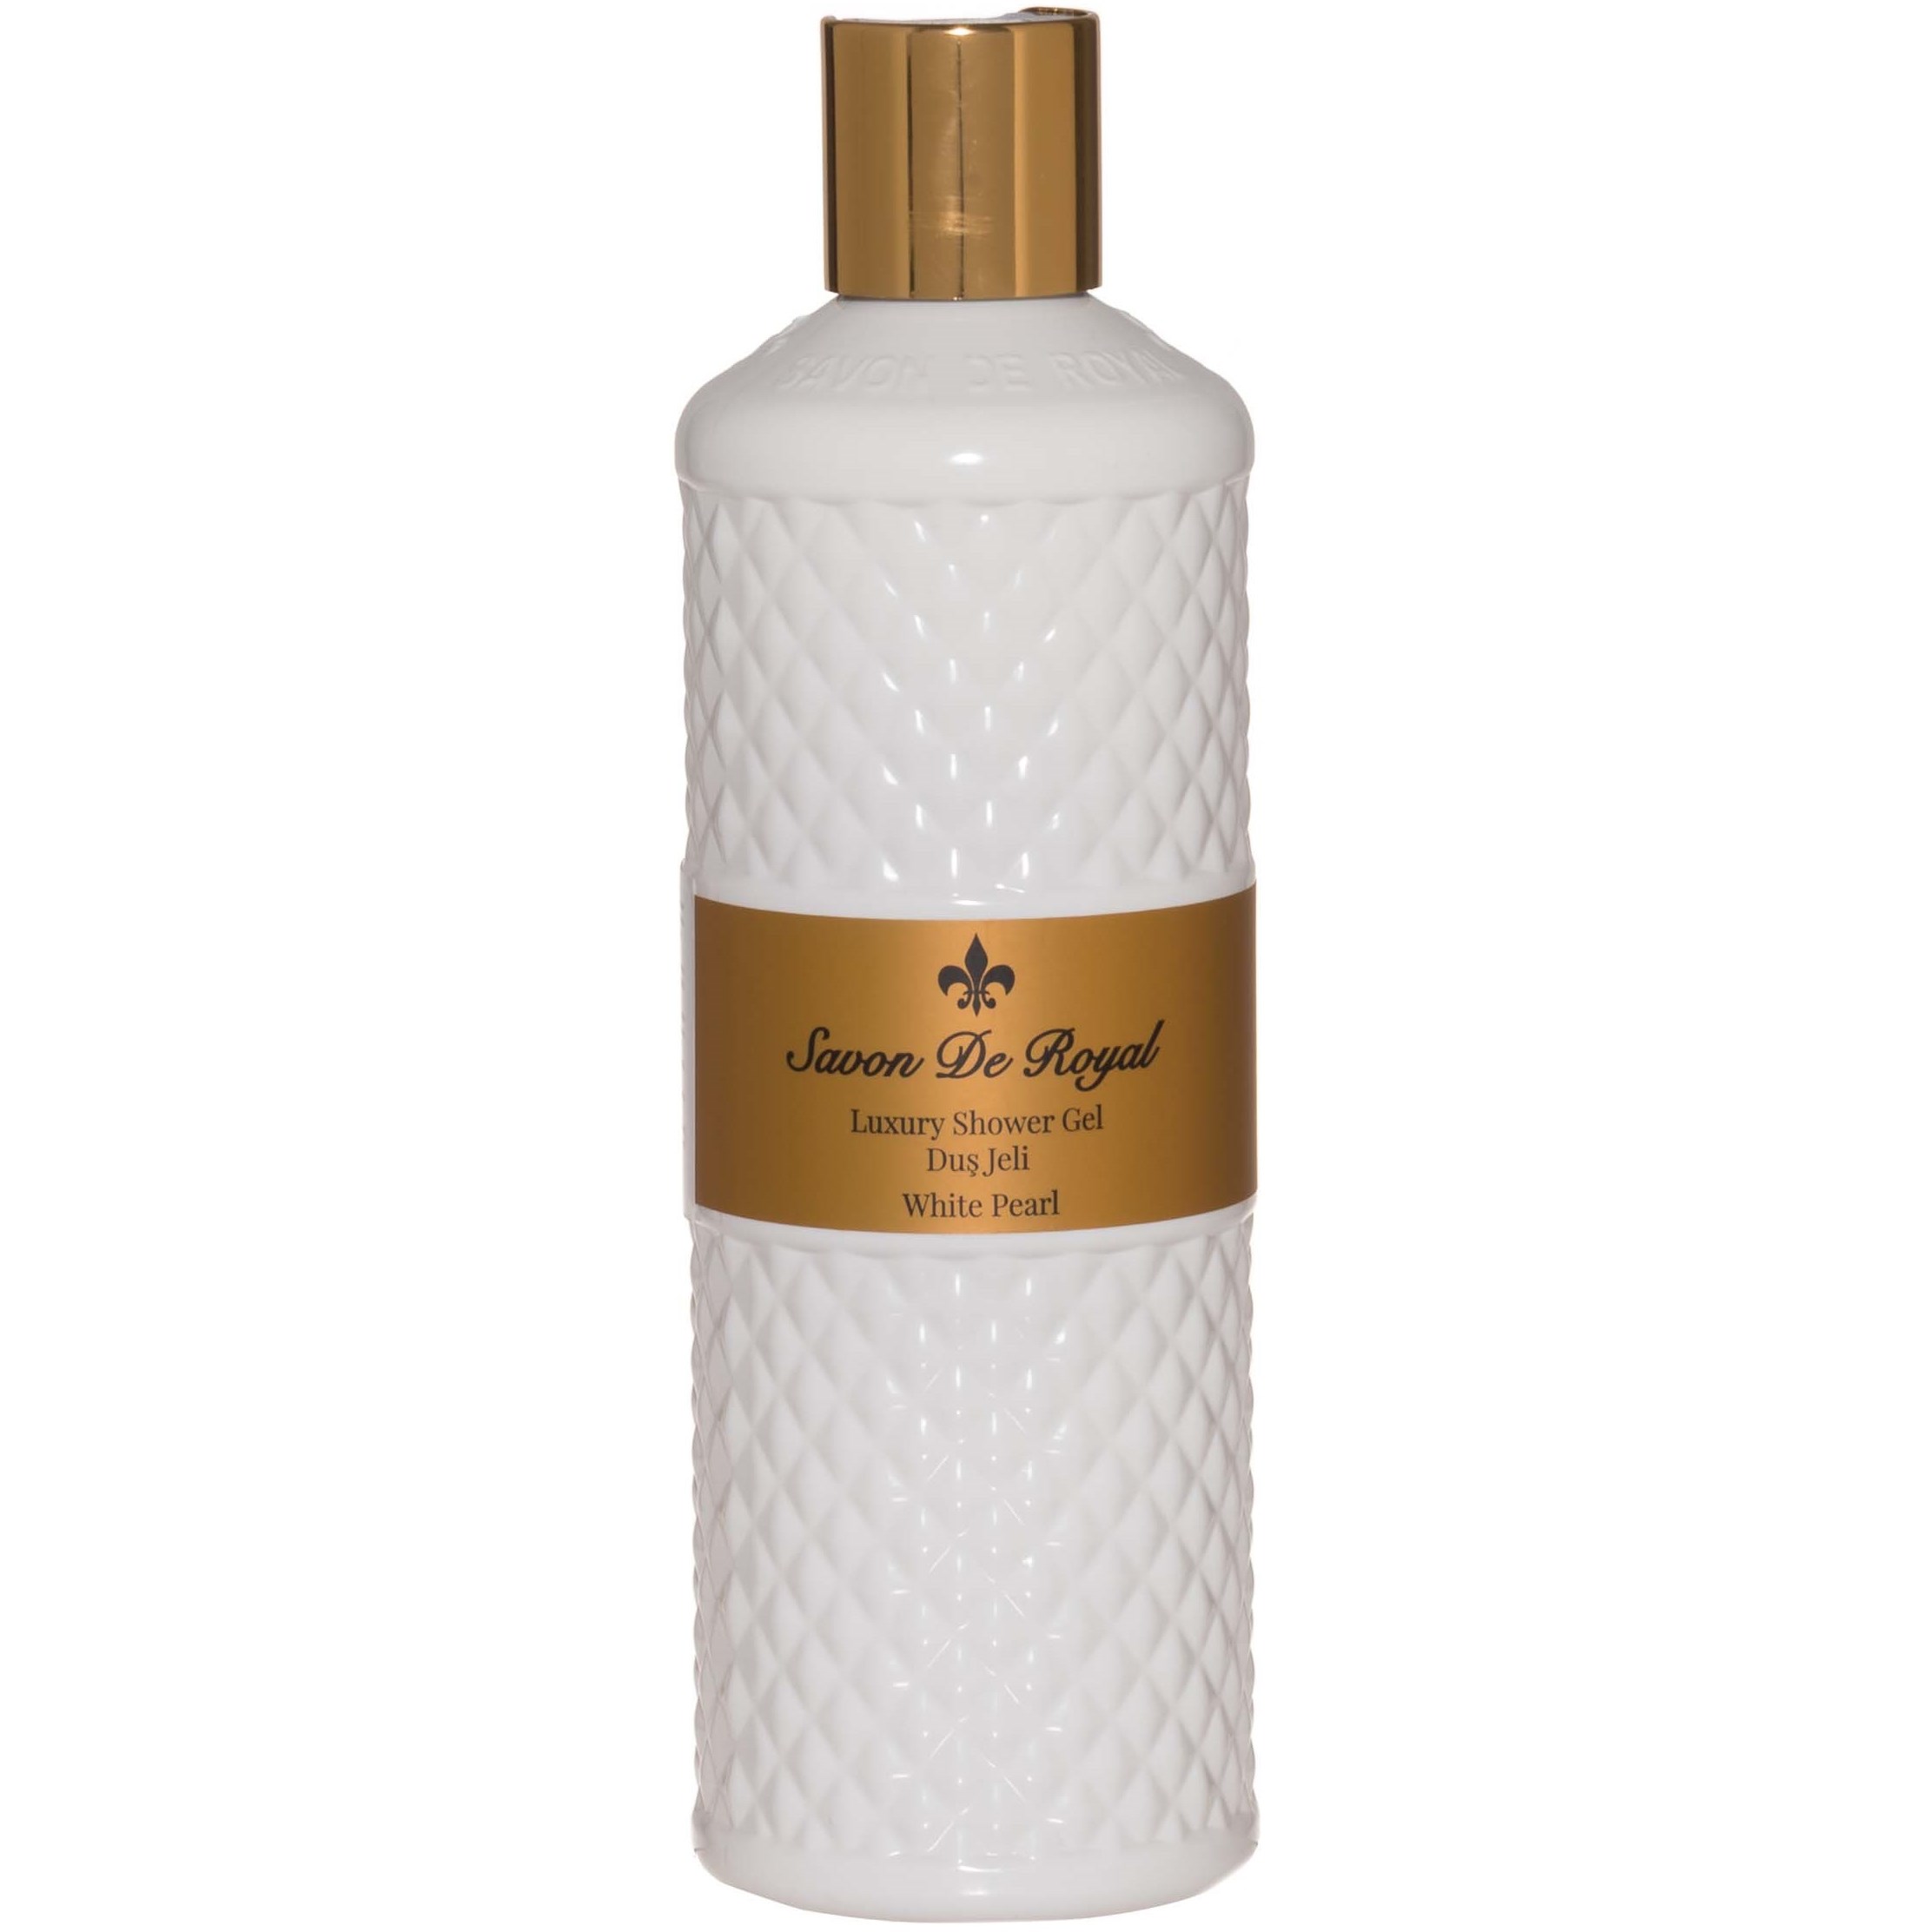 Savon de Royal White Pearl Shower Gel 500 ml